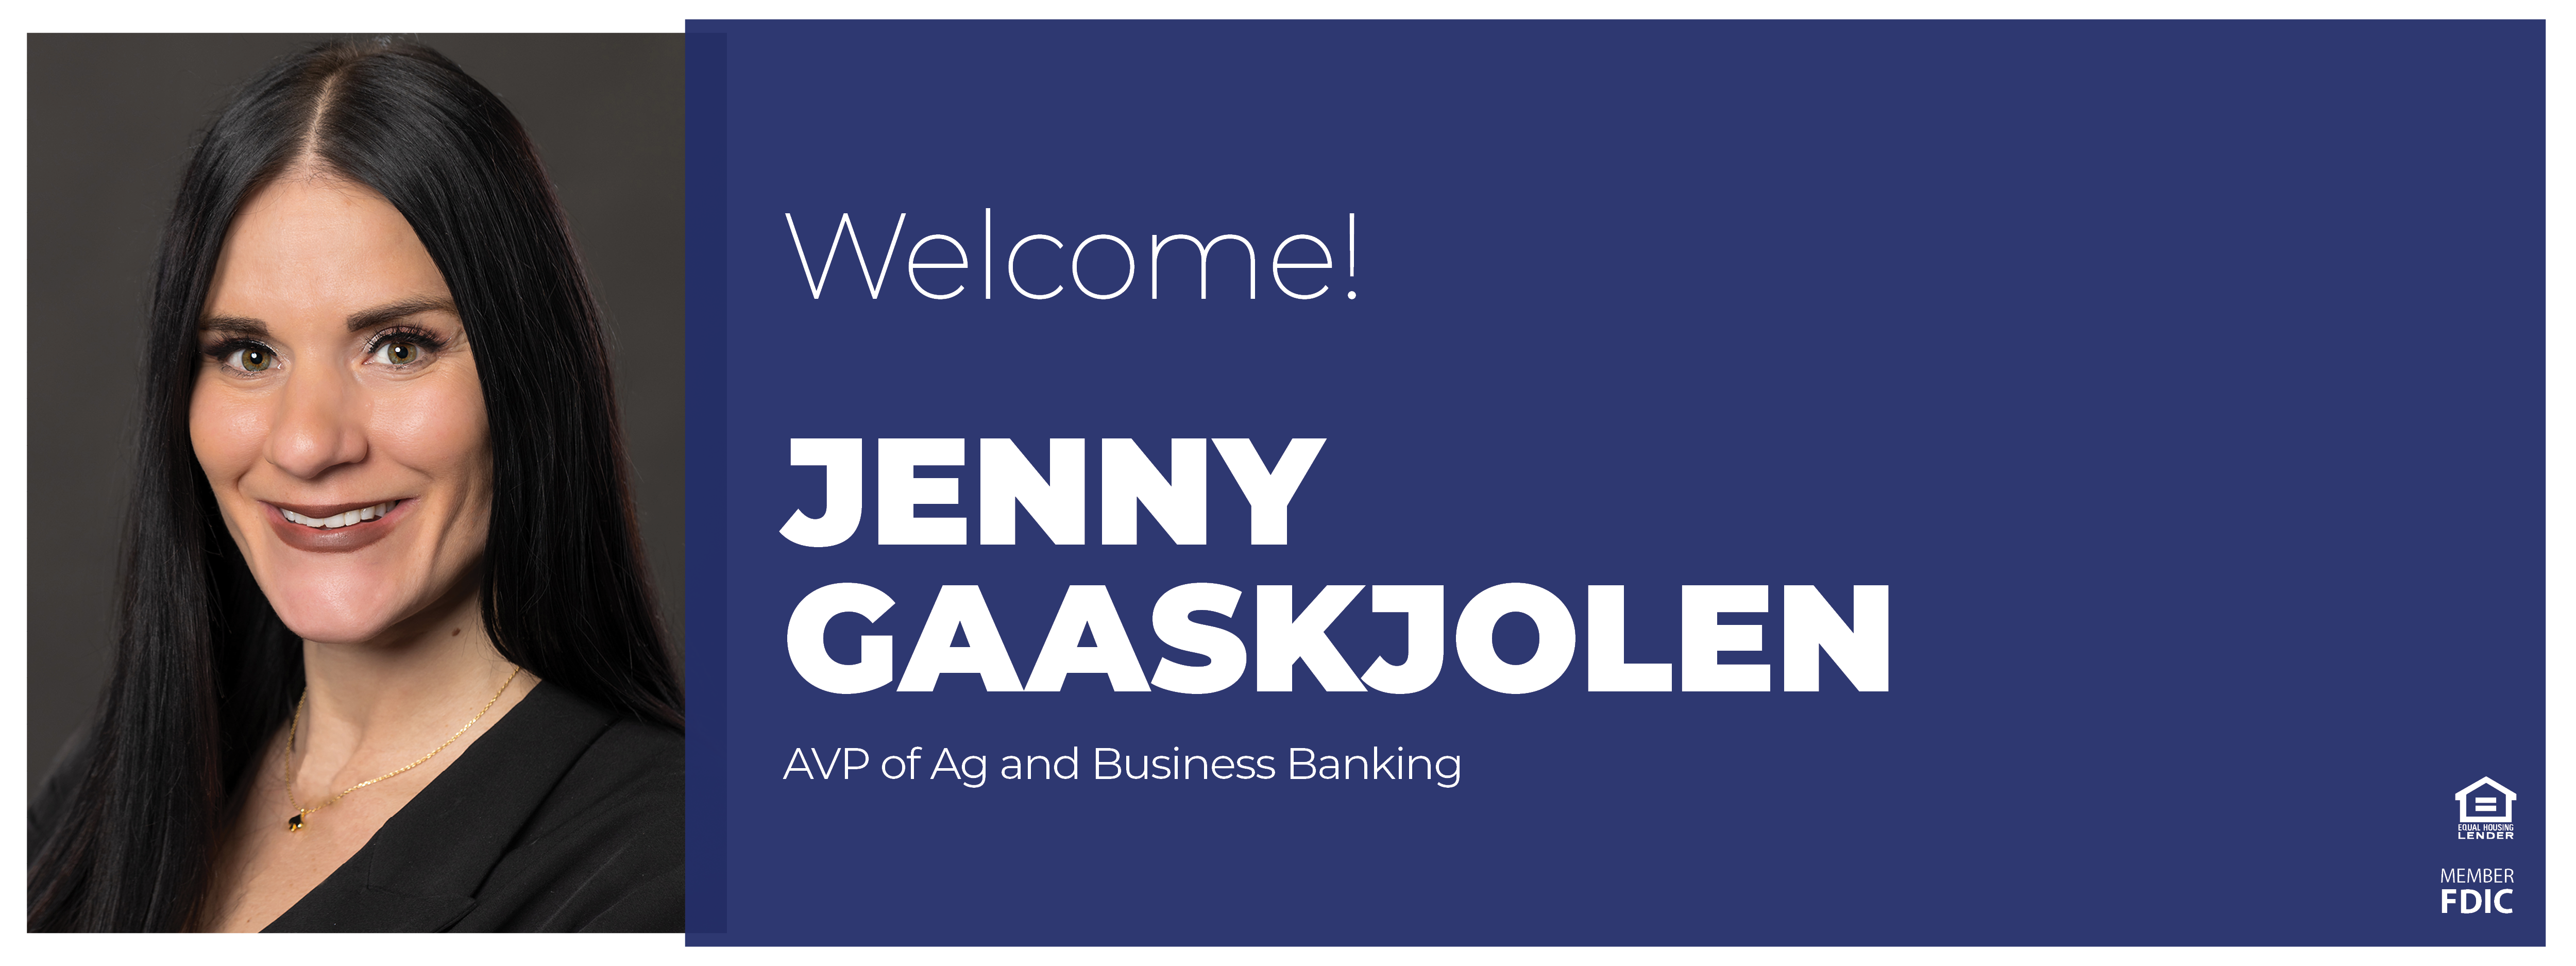 Welcome Jenny Gaaskjolen